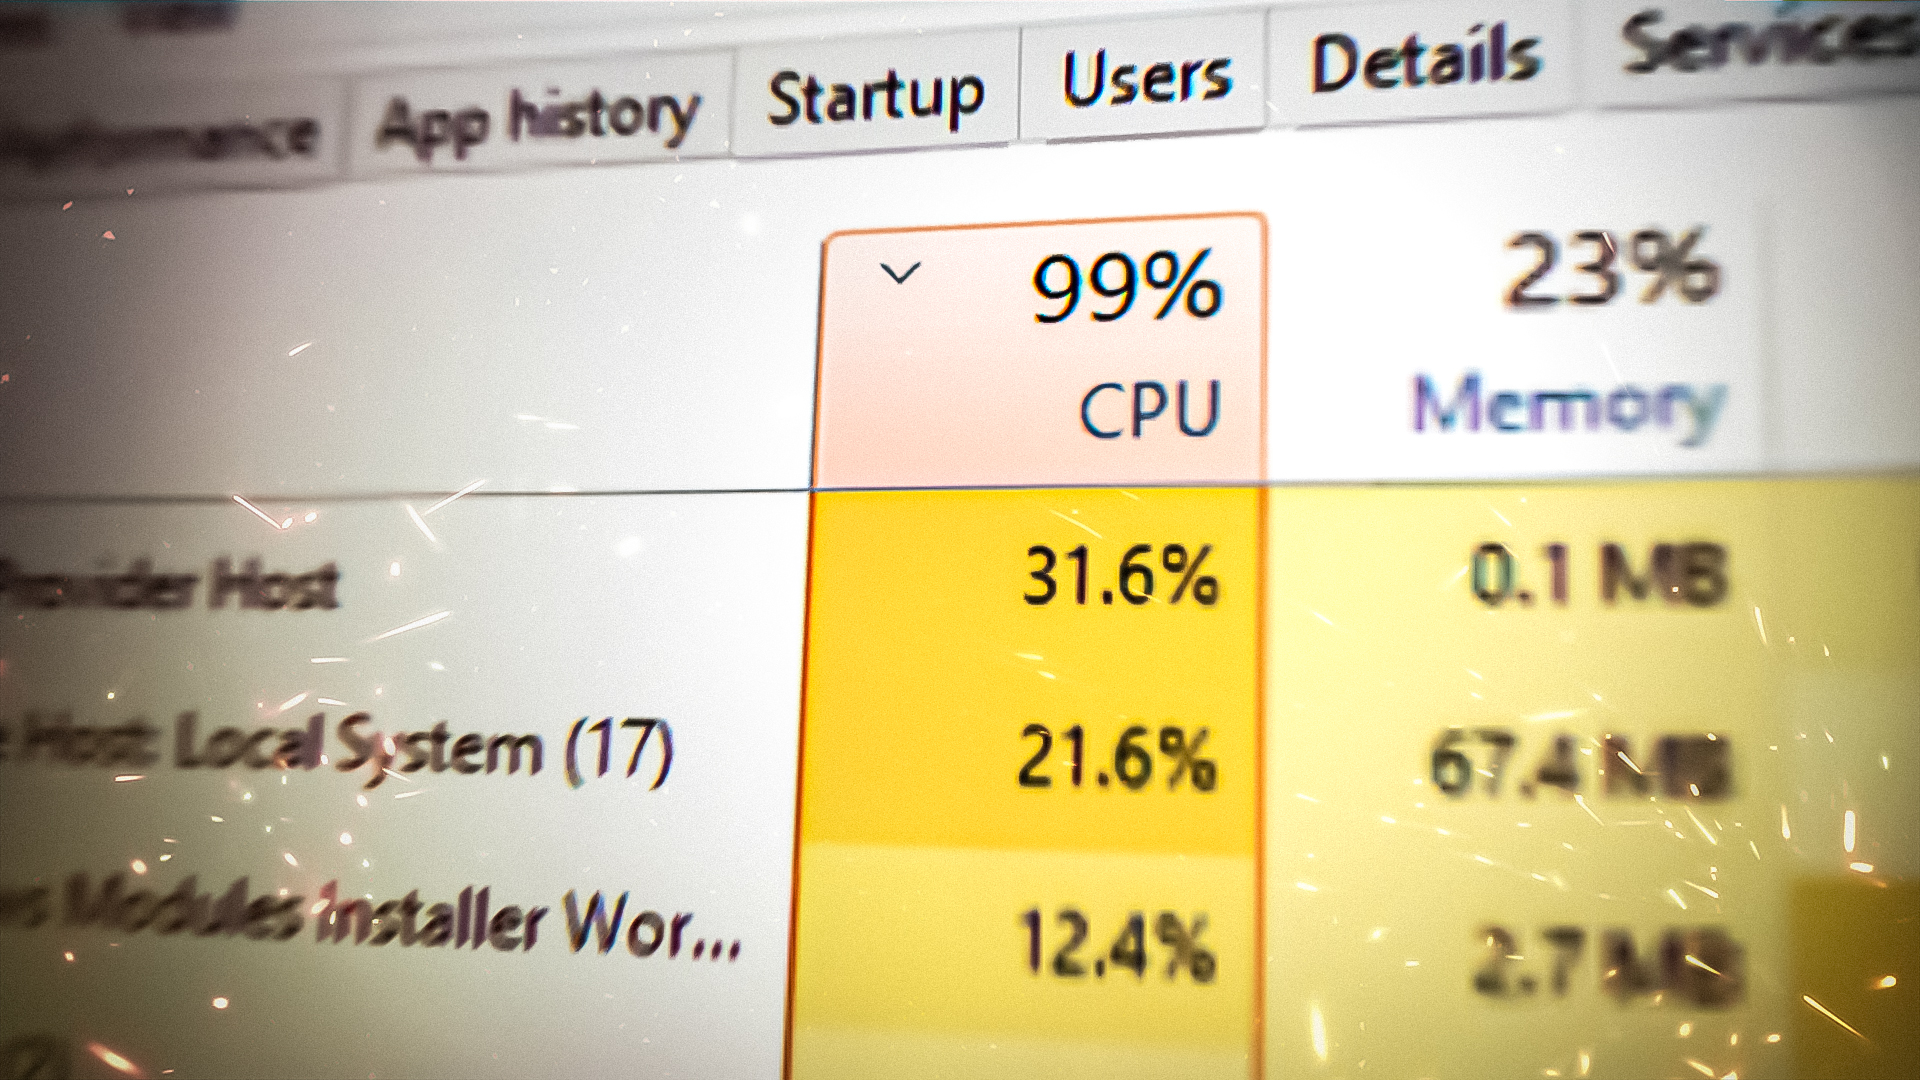 WMI Provider High CPU Usage